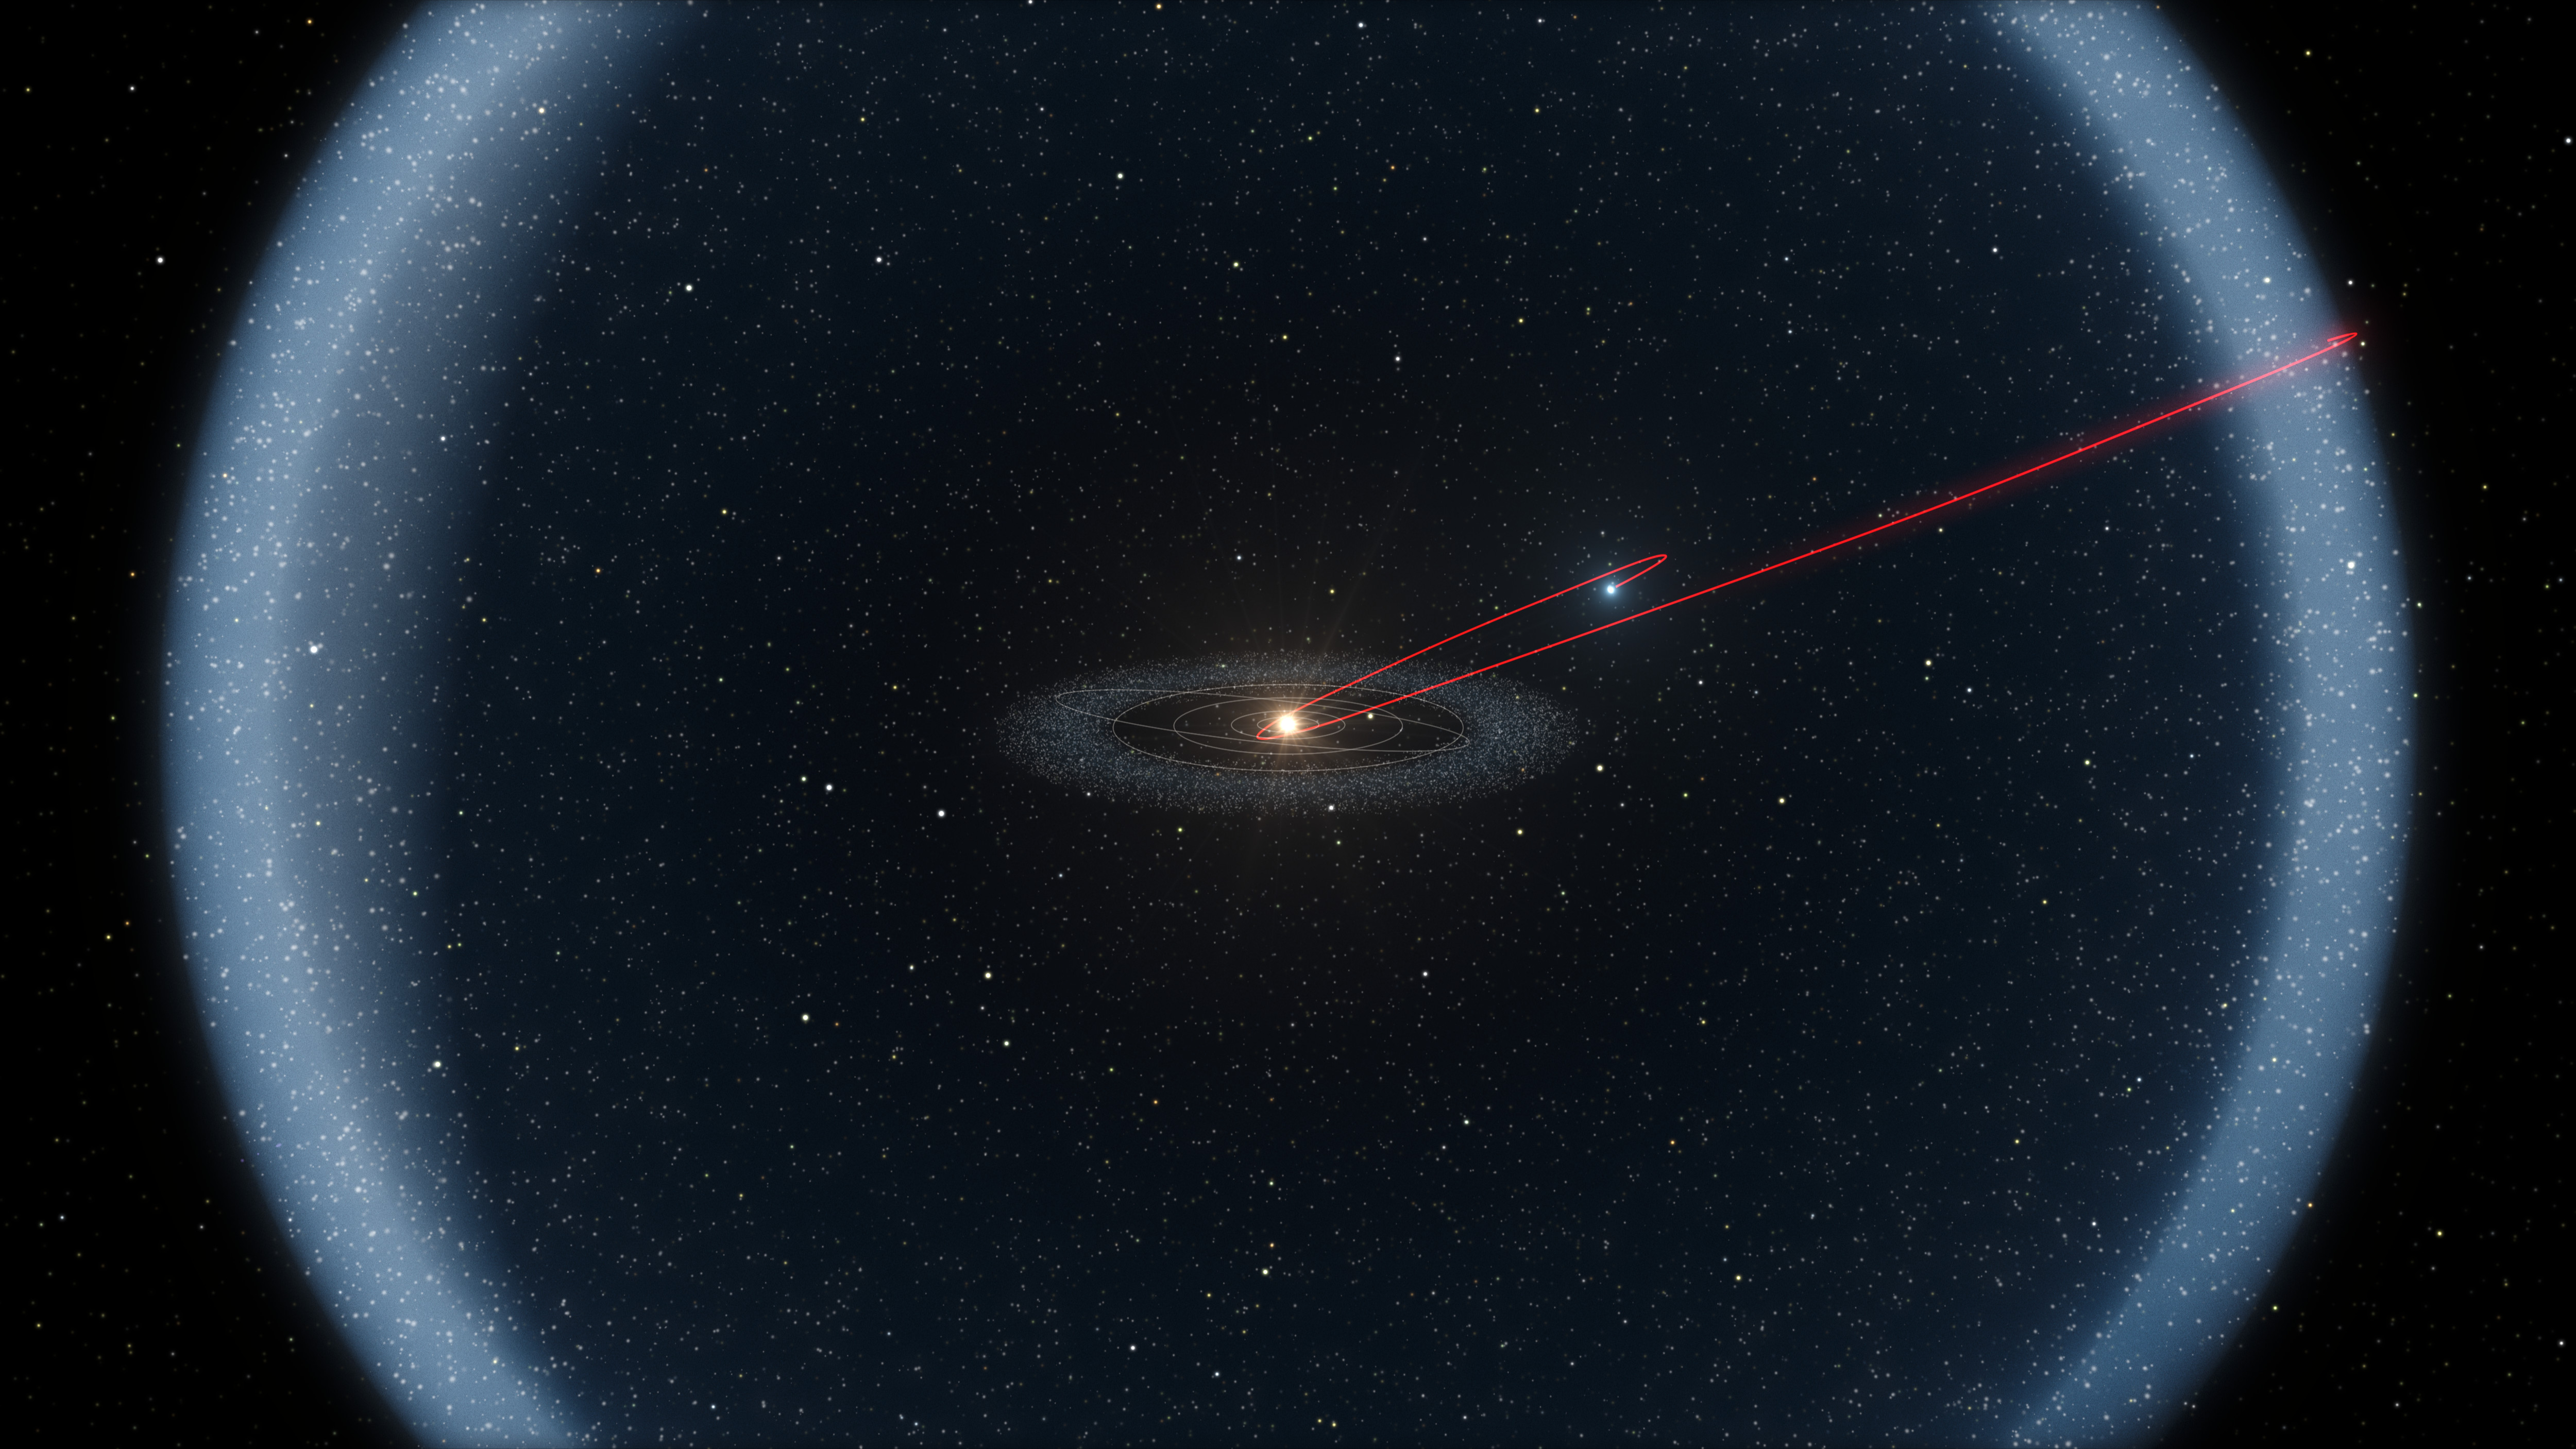 Na ilustracji: Wizja artystyczna Obłoku Oorta (~2000–100000 j.a.) – ogromnego rezerwuaru lodowych obiektów znajdujących się w zewnętrznym obszarze Układu Słonecznego. W dzisiejszych czasach w pobliże Słońca niejednokrotnie trafiają obiekty takie jak np. kometa, której orbitę oznaczono czerwoną linią. Ale gdy będzie mijała ten obłok obca gwiazda, to należy oczekiwać wielkiej liczby wizyt w pobliżu Ziemi ciał niebieskich wyrzuconych z tego obszaru. Źródło: ESO/L. Calçada